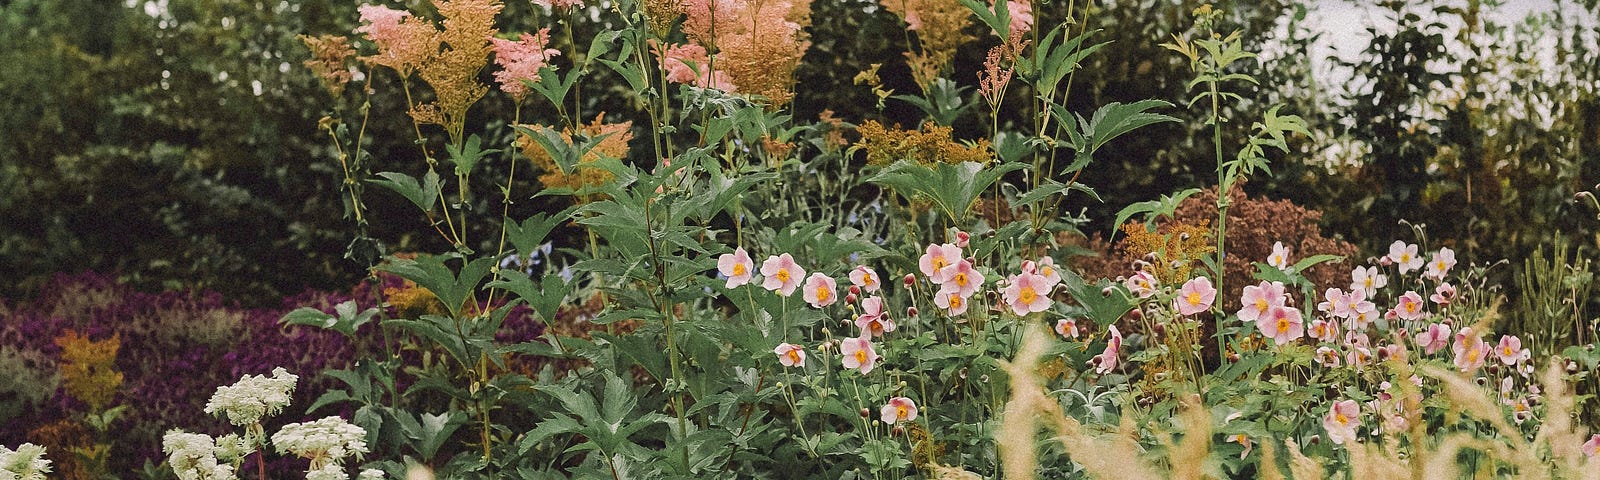 Image of a wild garden